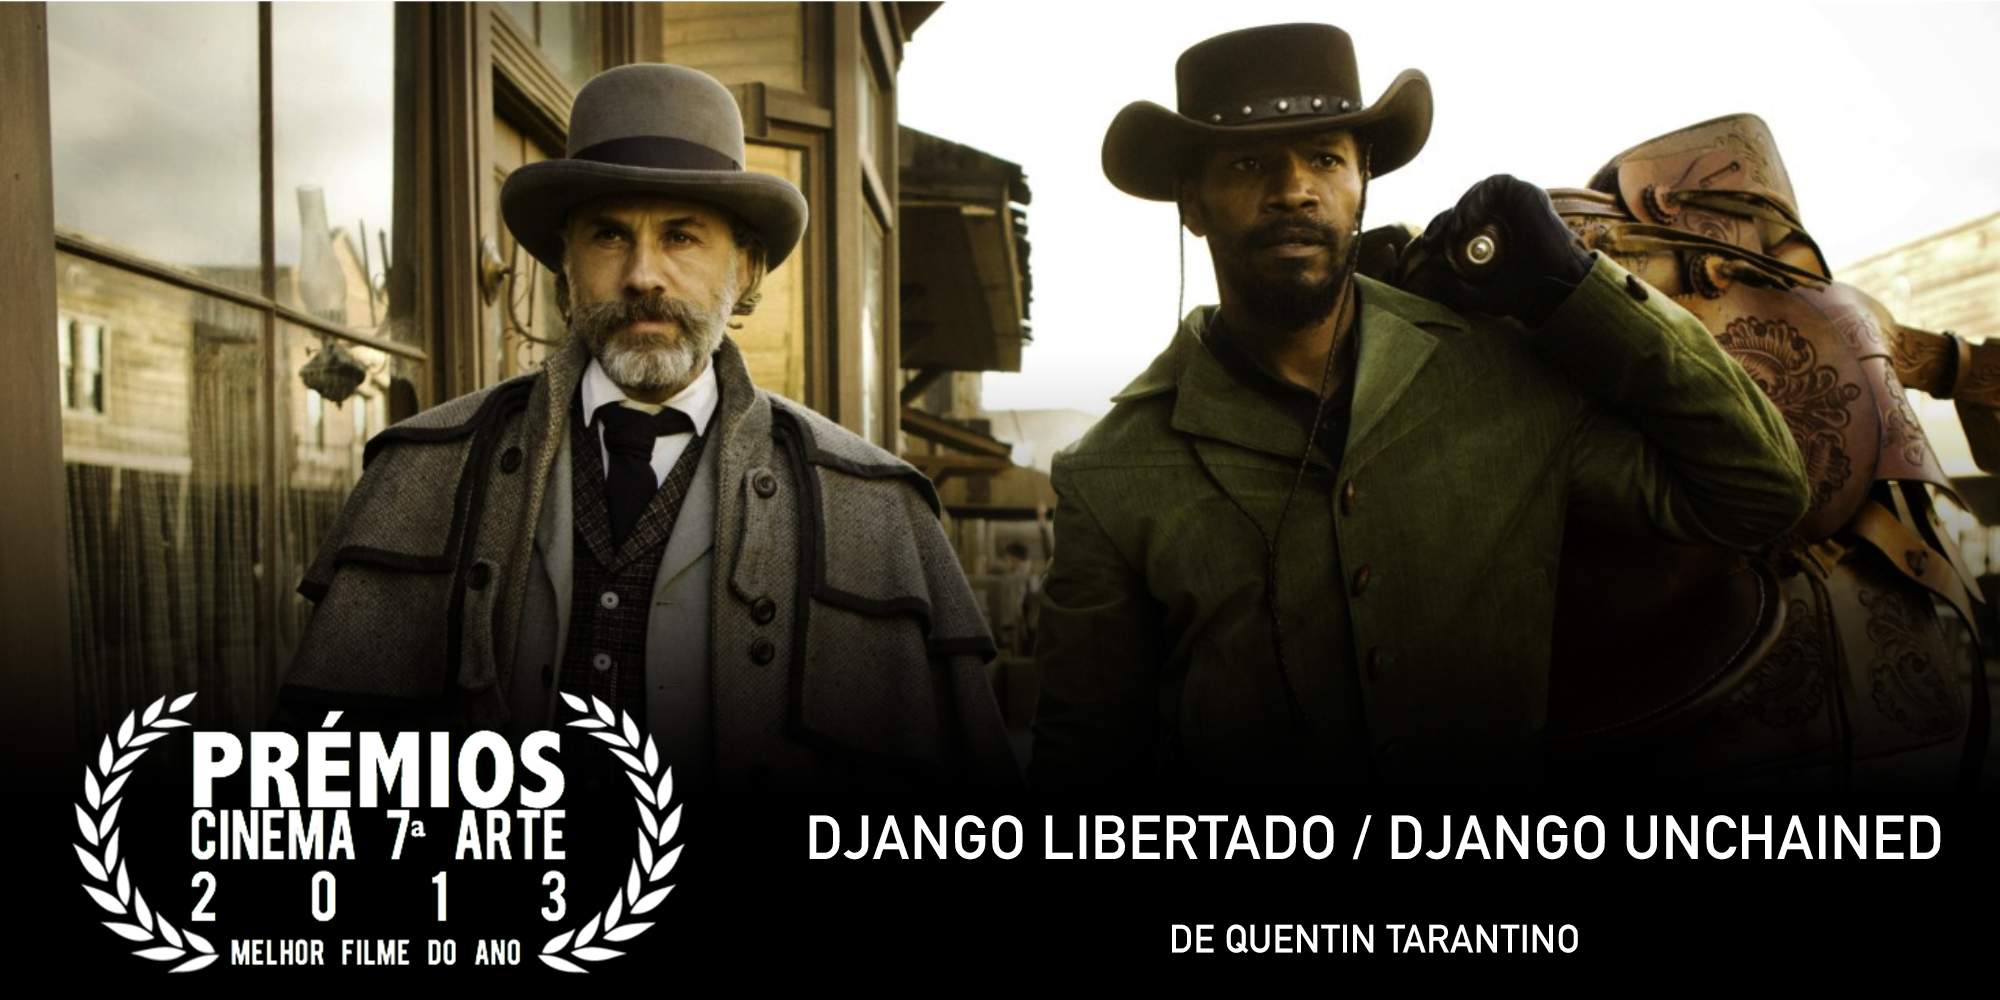 Premios C7A 2013 - Vencedor Melhor Filme do Ano